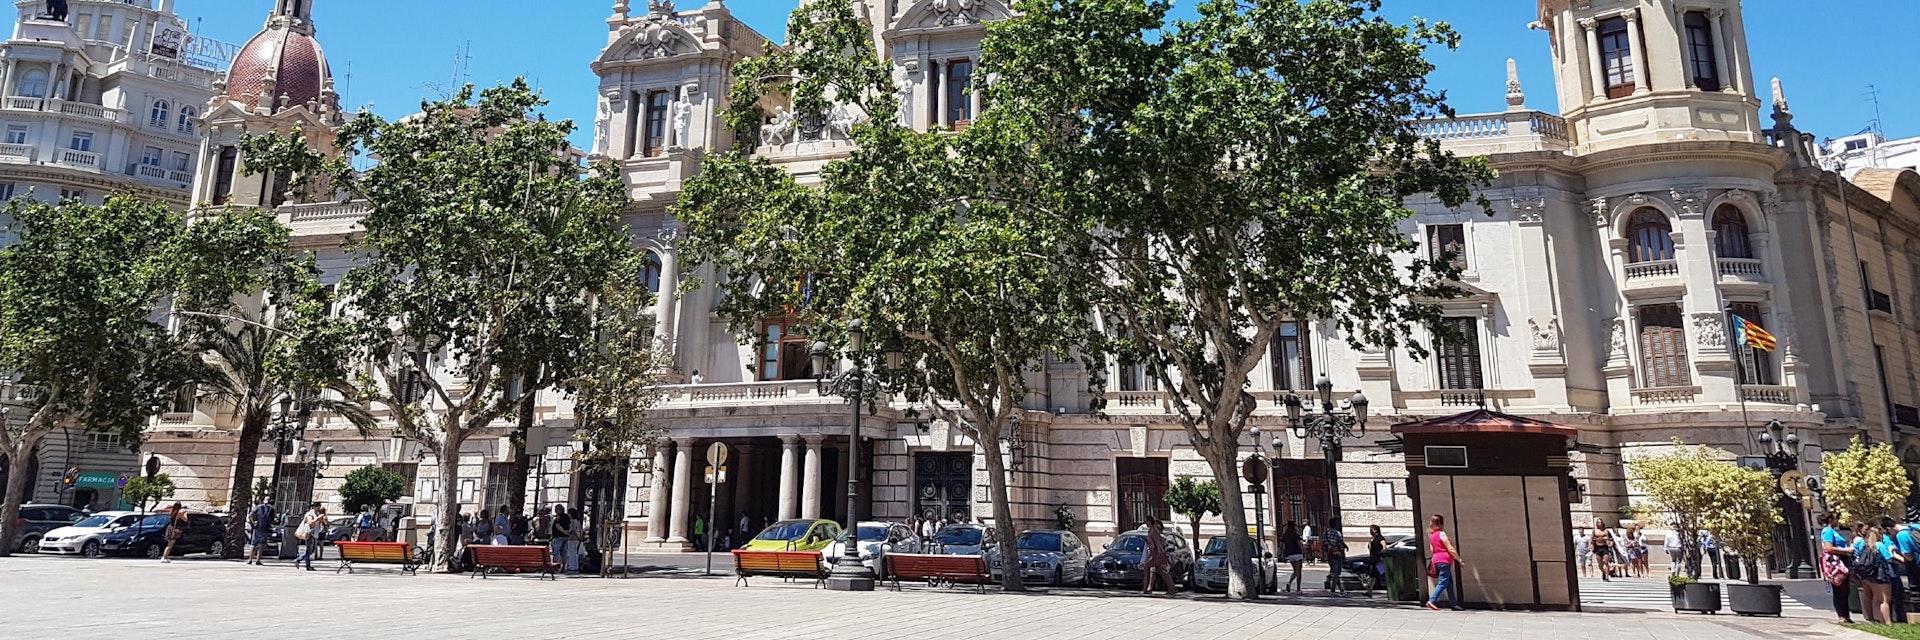 Ayuntamiento from Plaza de la Ayuntamiento.